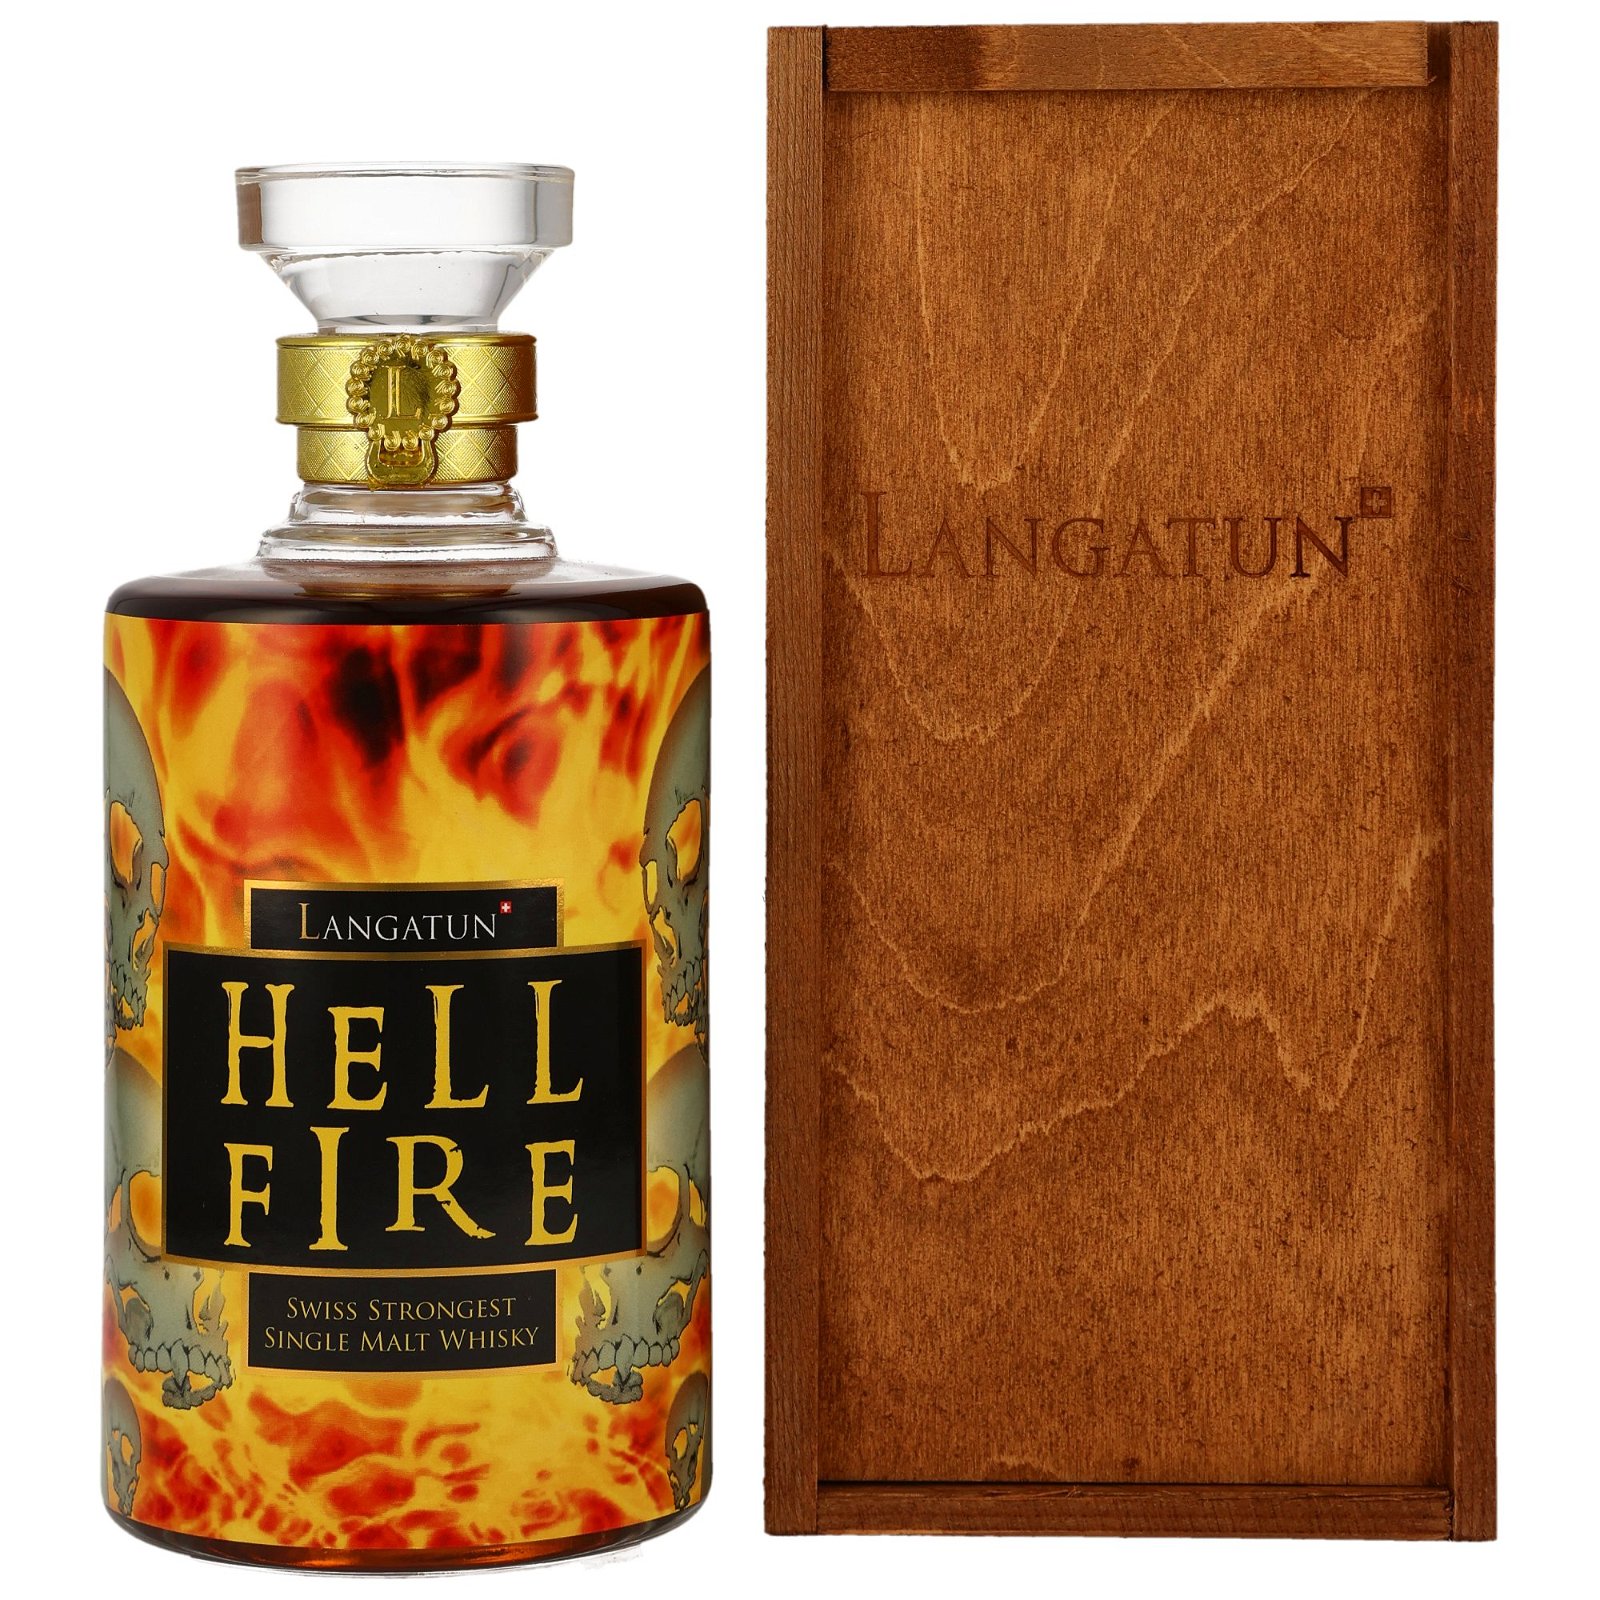 Langatun Hell Fire 2nd Edition Sherry Cask Finish No. 666